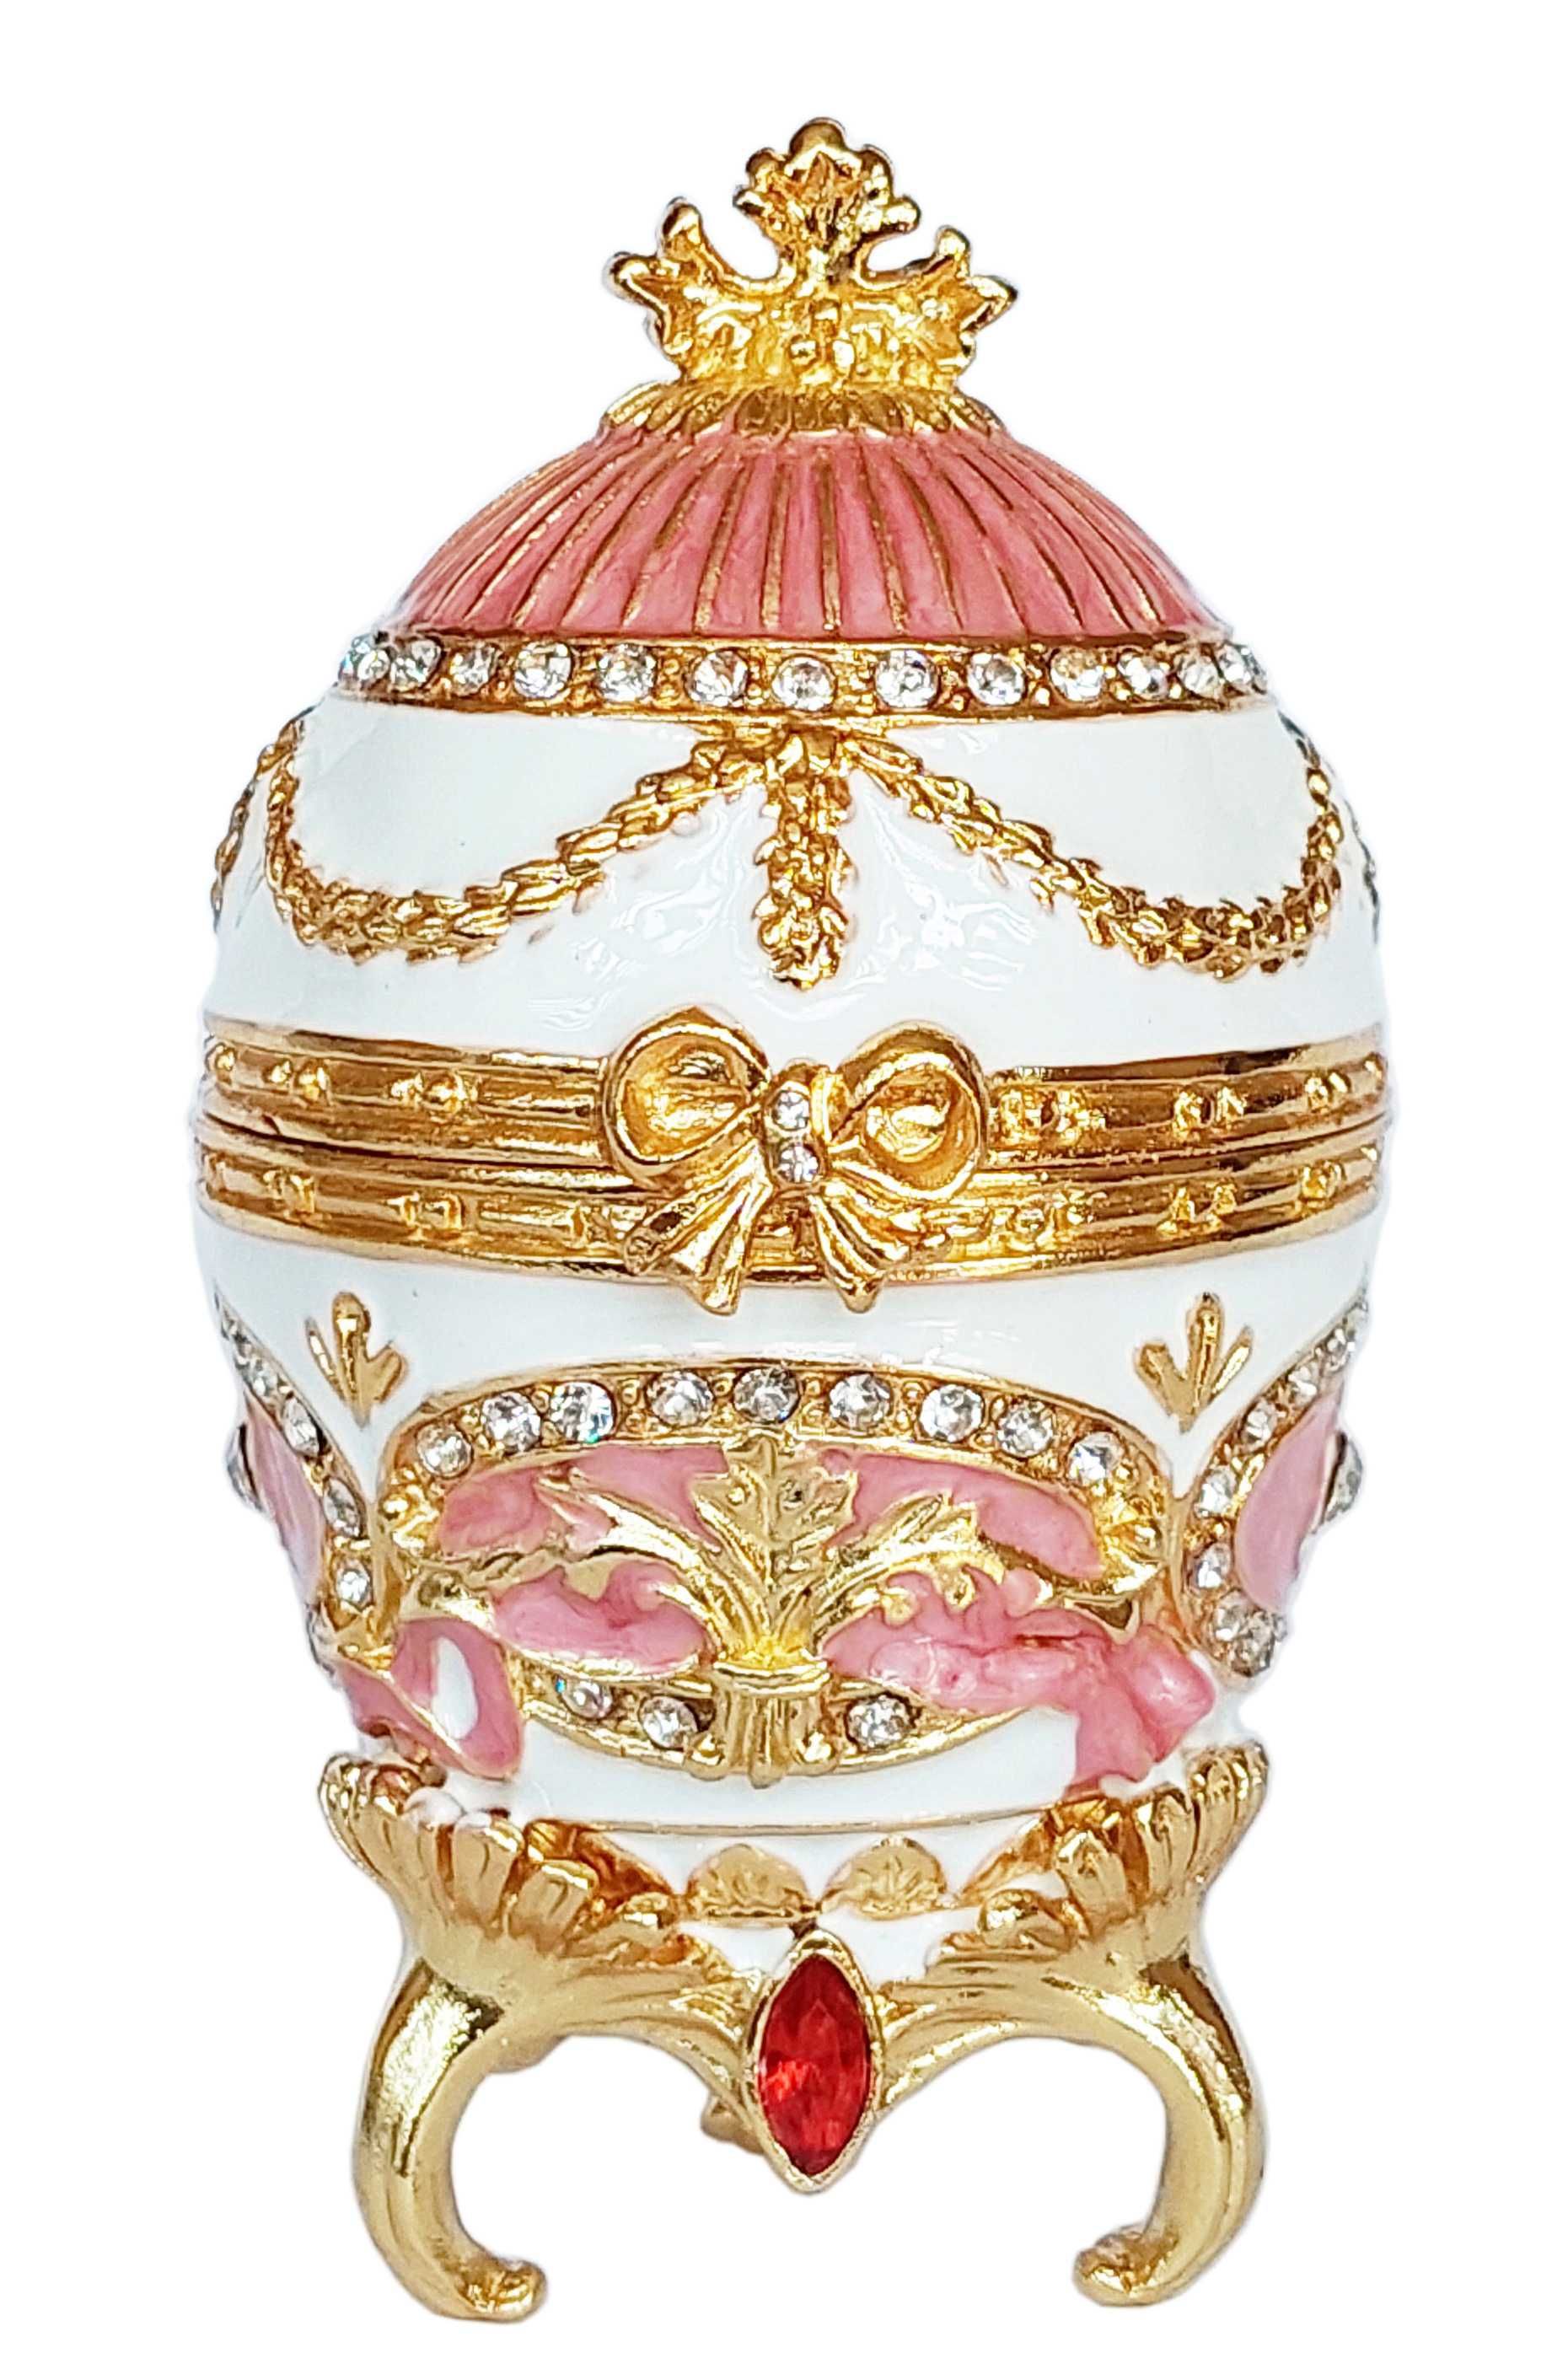 Фаберже стил, кутийки-яйца за бижута в луксозна подаръчна кутия.